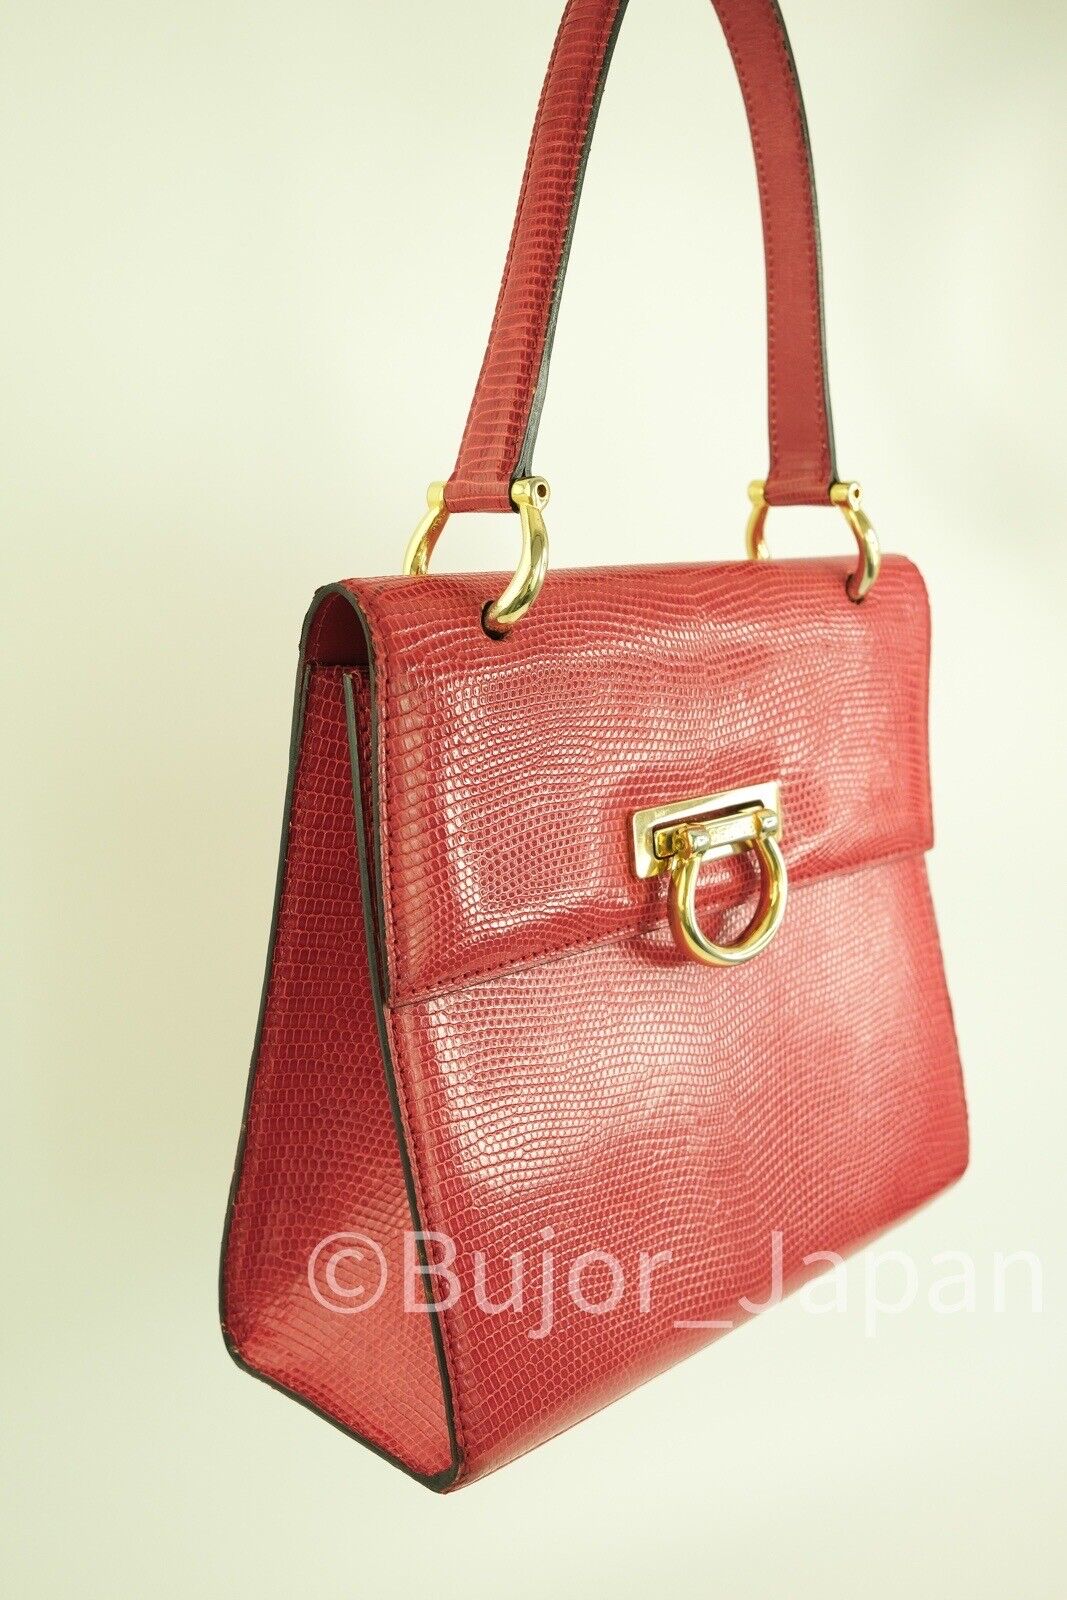 Celine Box bag Vintage Lizard leather Exotic Gancini Hardware Red, Made in France, Handbag shoulder bag, Vintage Handbag, Bag Leather Women